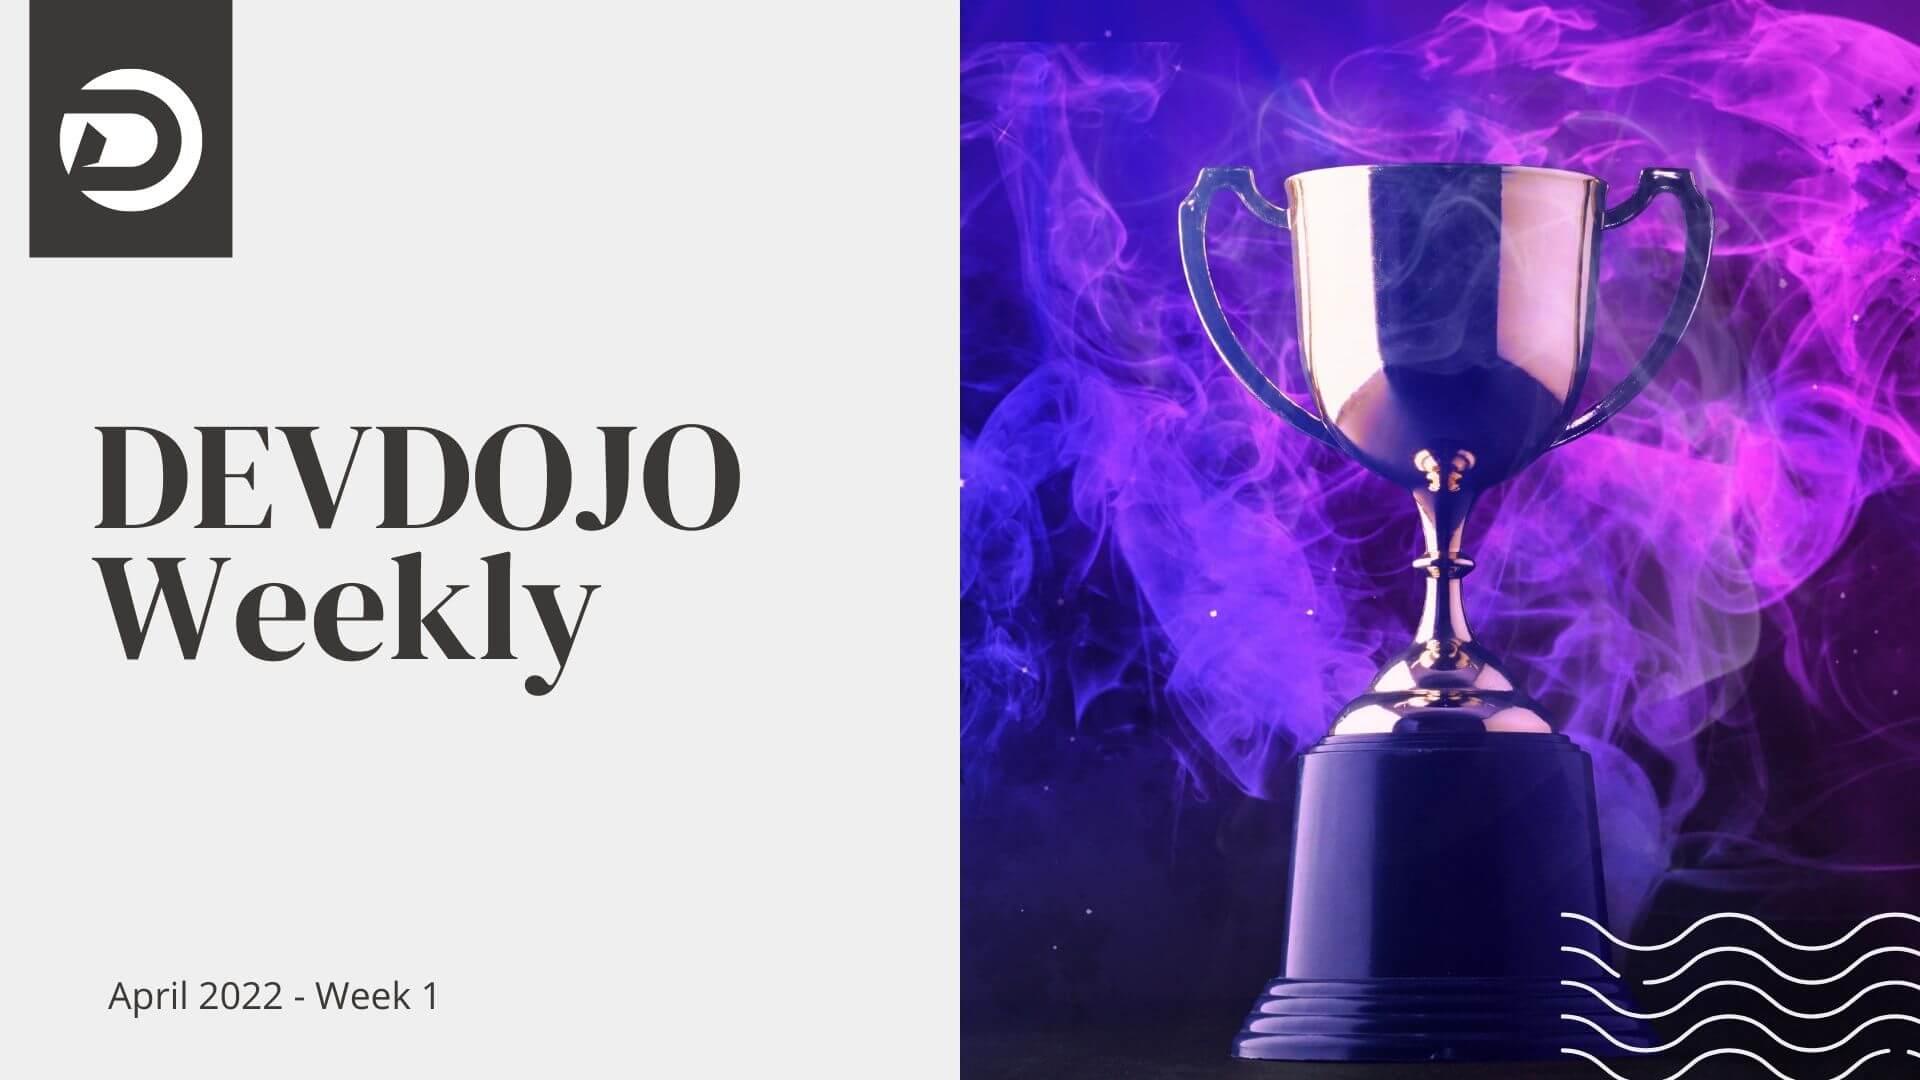 DevDojo Weekly - April 2022 - Week 1